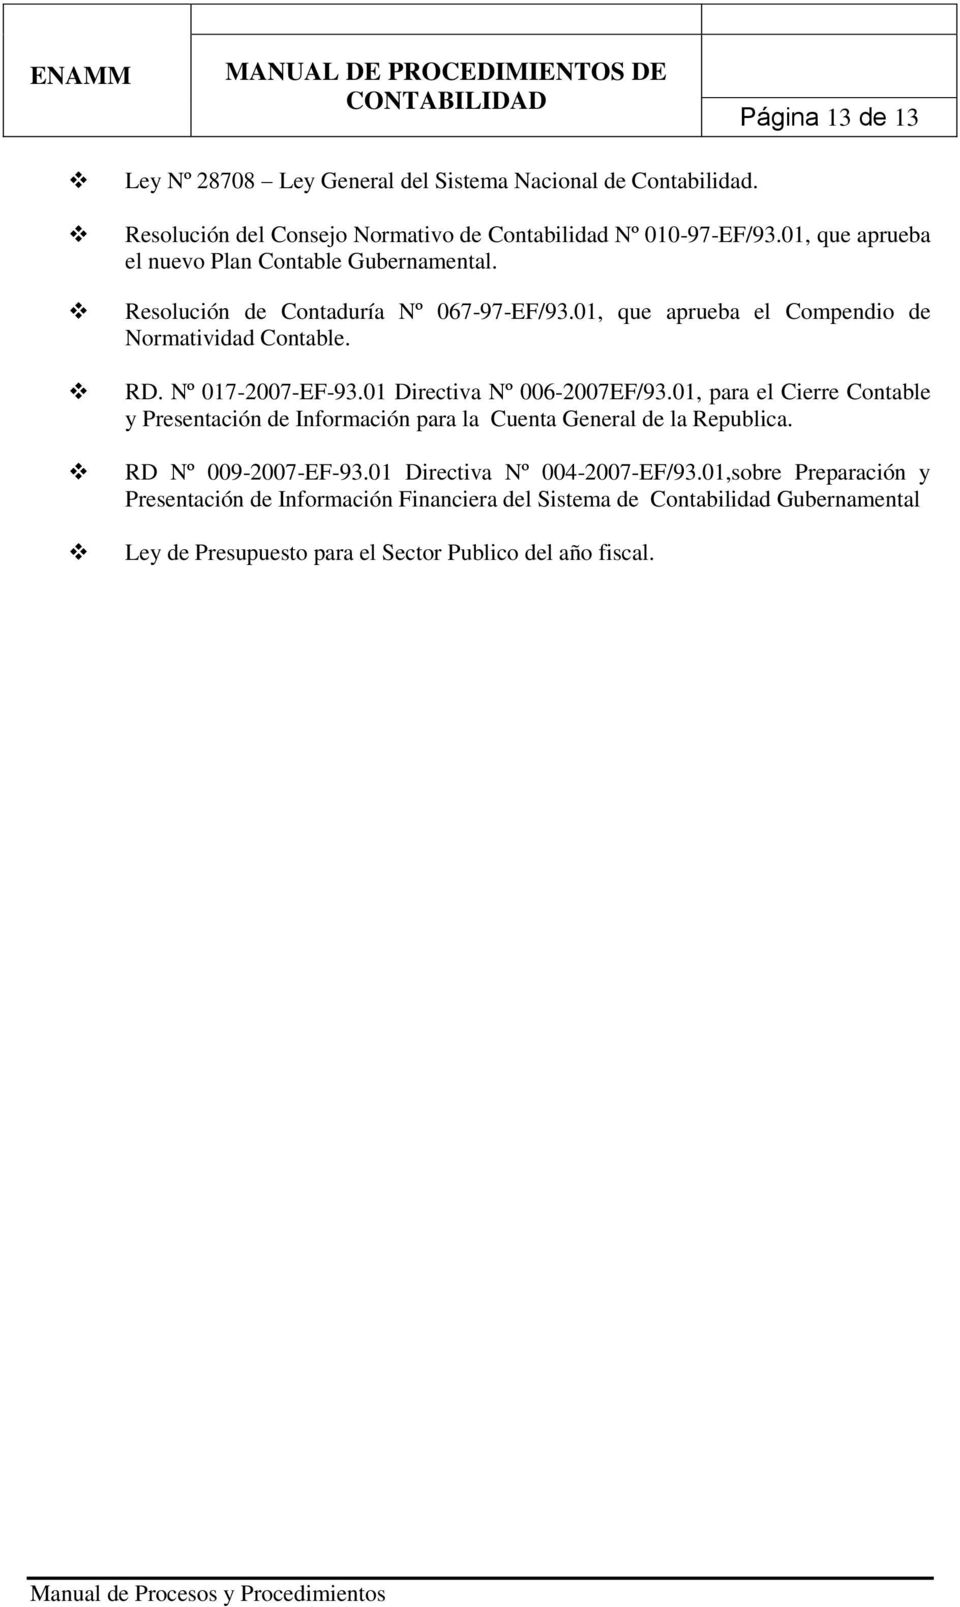 Nº 017-2007-EF-93.01 Directiva Nº 006-2007EF/93.01, para el Cierre Contable y Presentación de Información para la Cuenta General de la Republica.